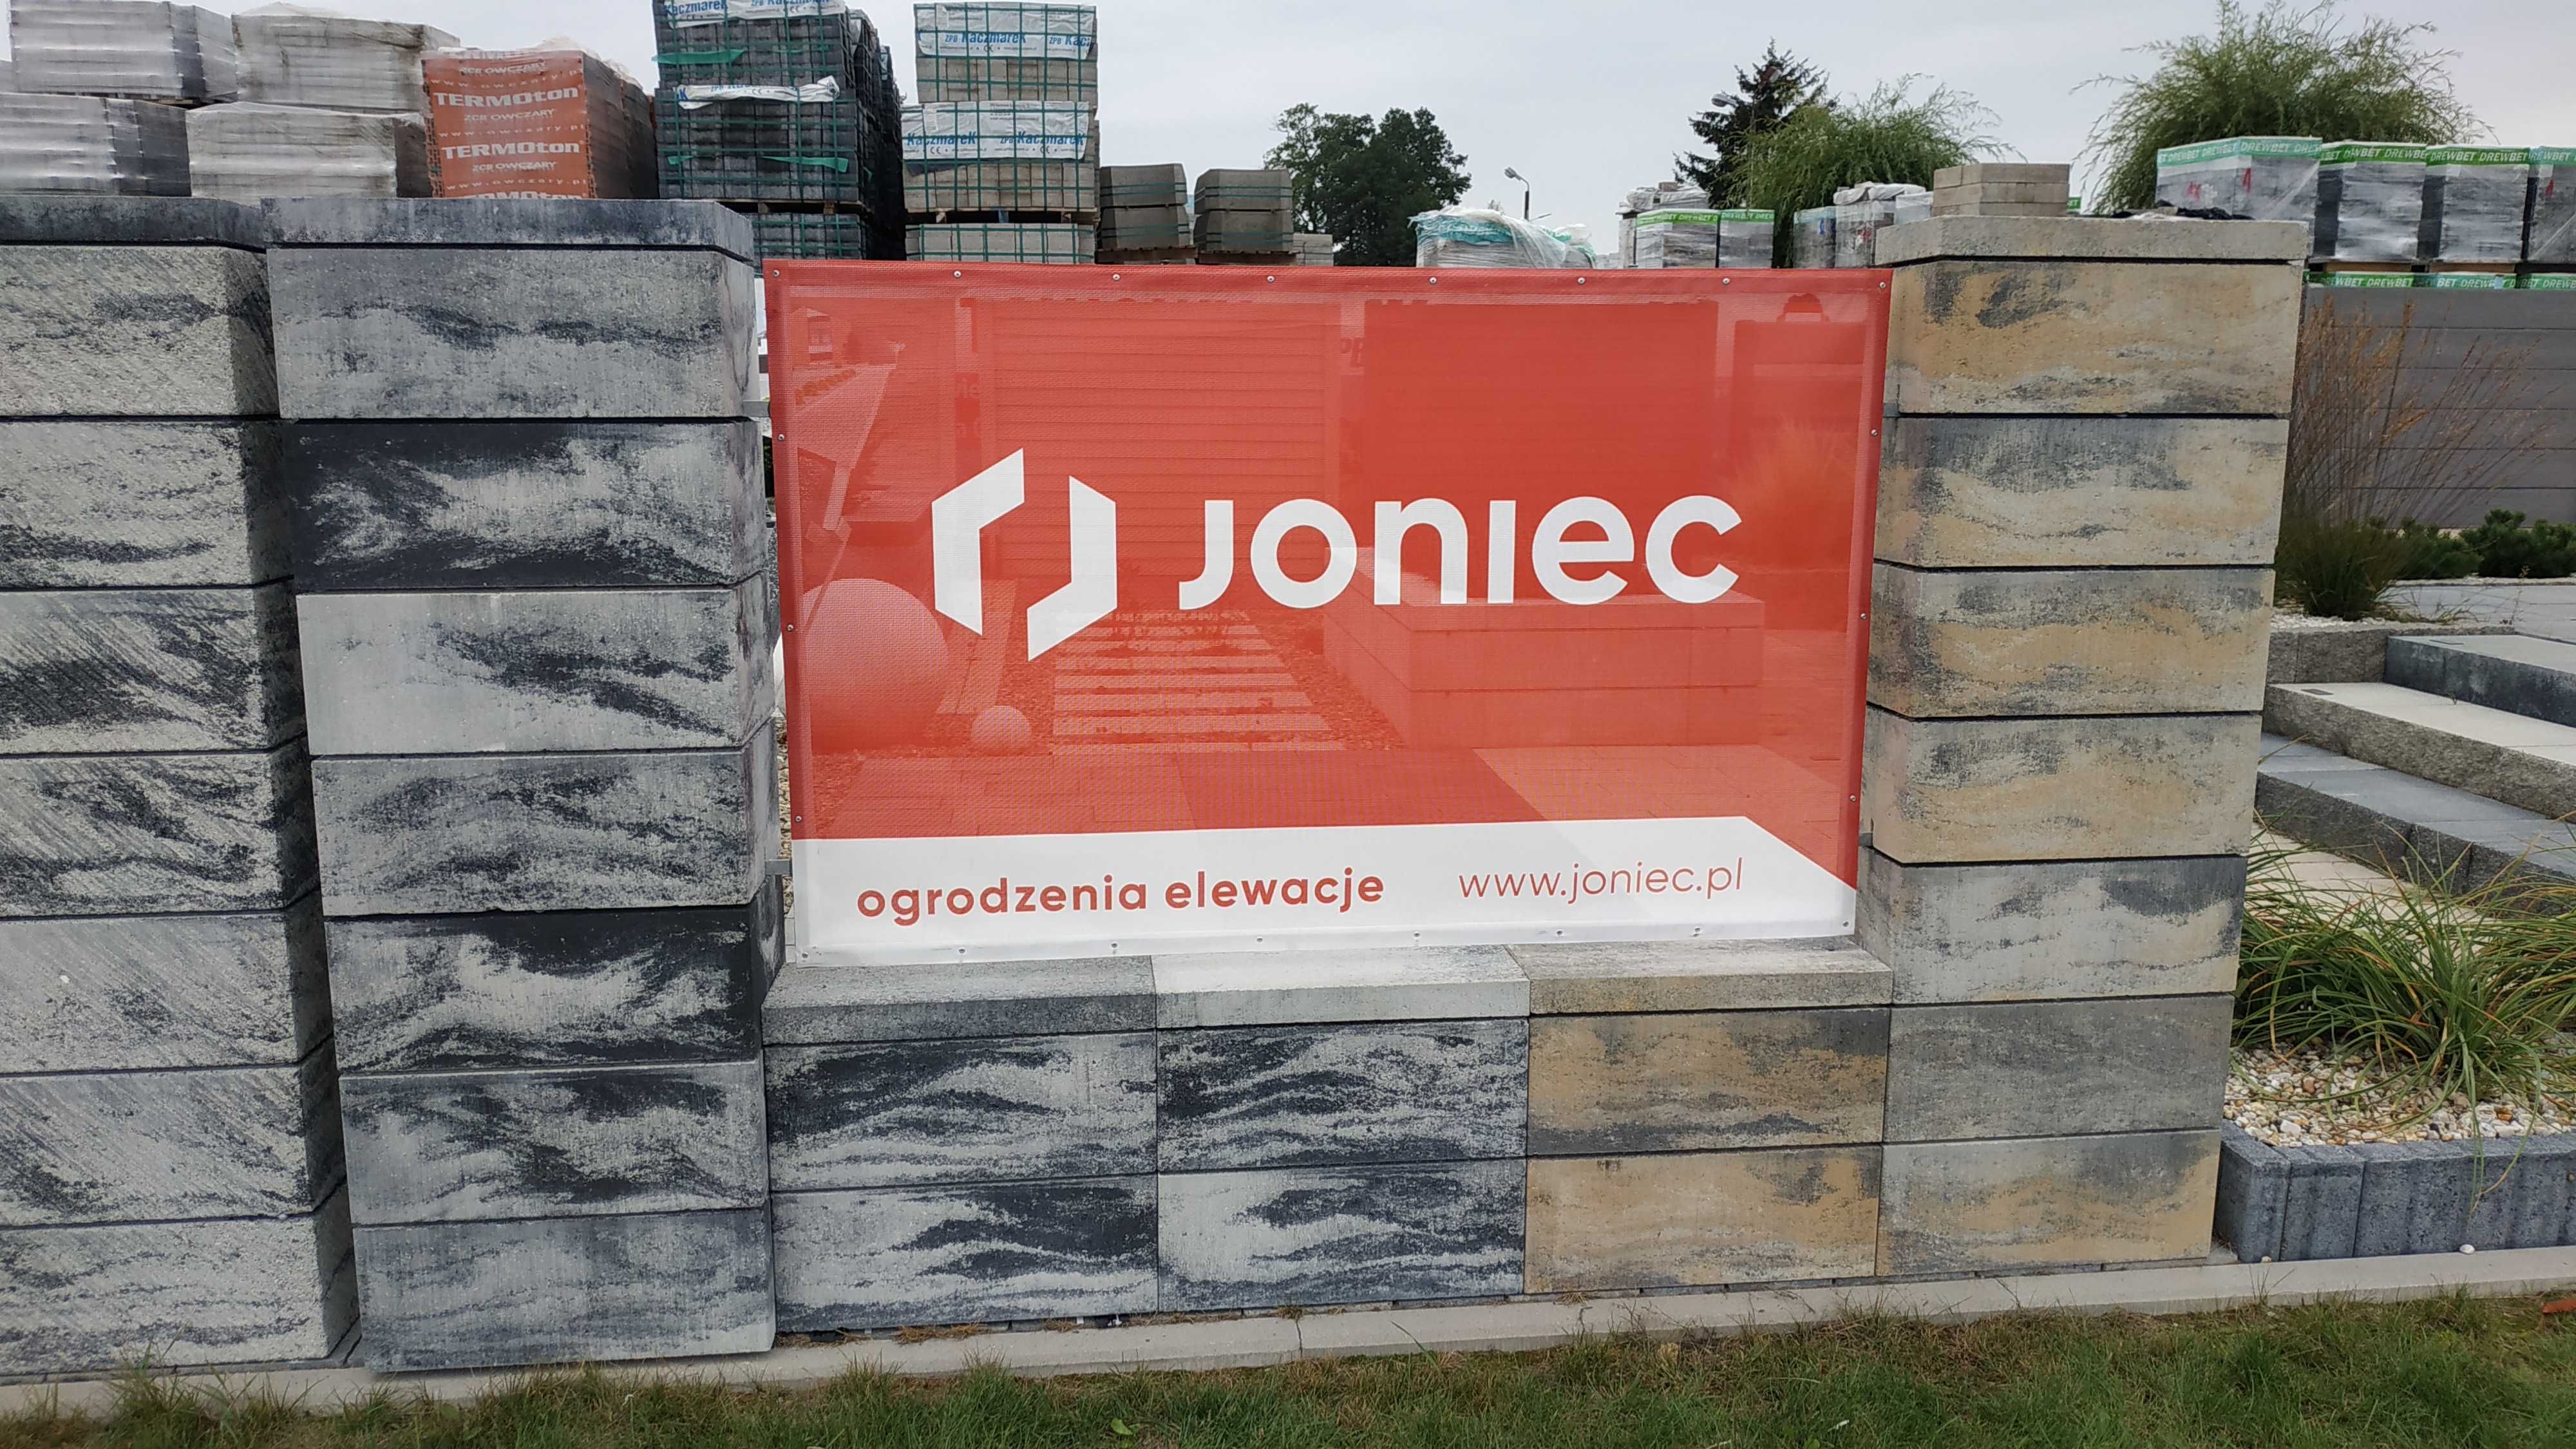 Ogrodzenia JONIEC płoty betonowe modułowe ROMA HORIZON wysyłka